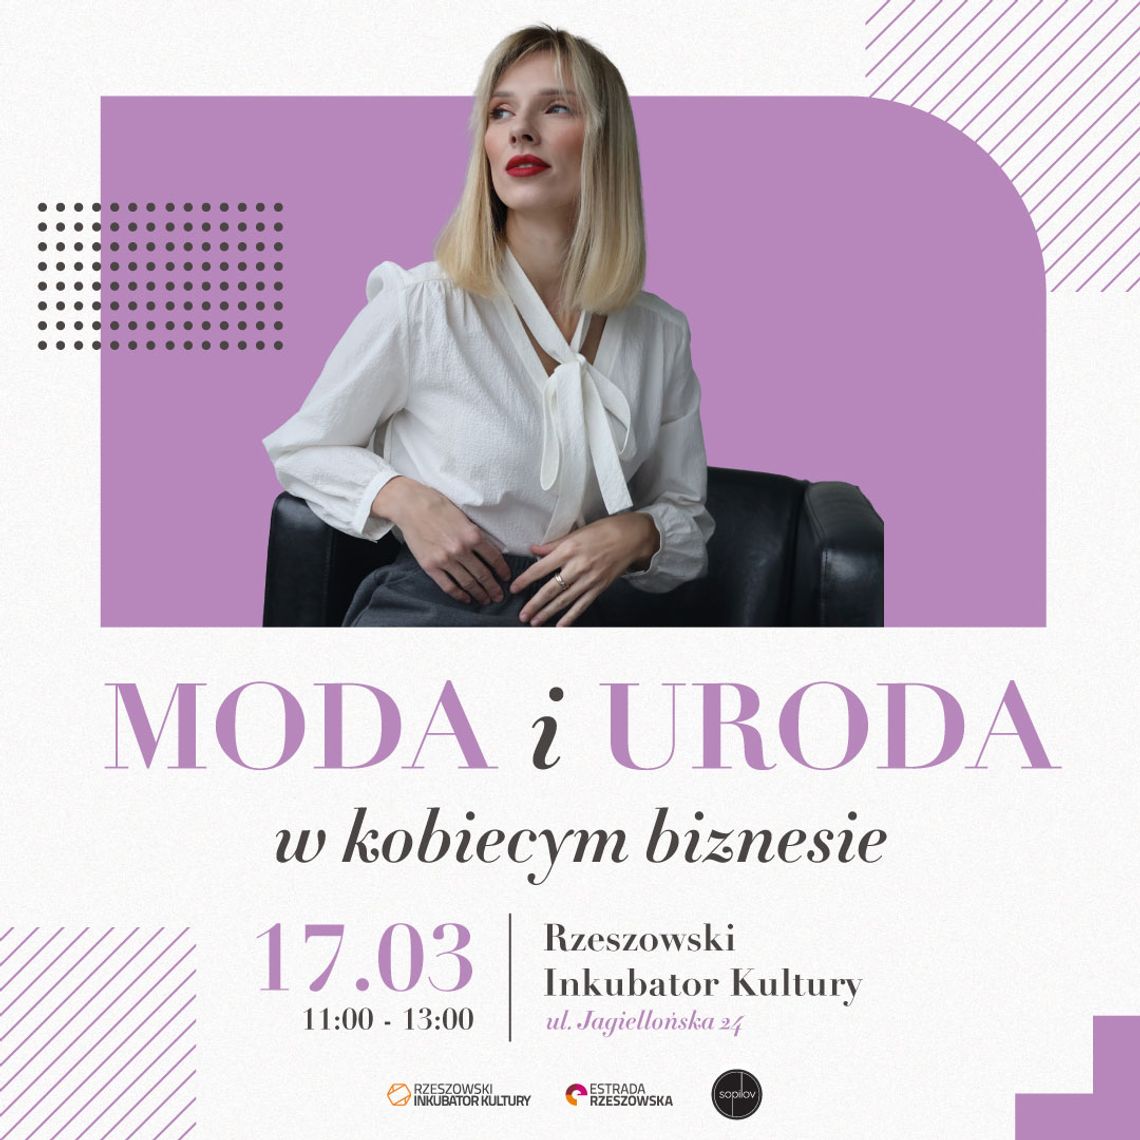 Event MODA i URODA w kobiecym biznesie